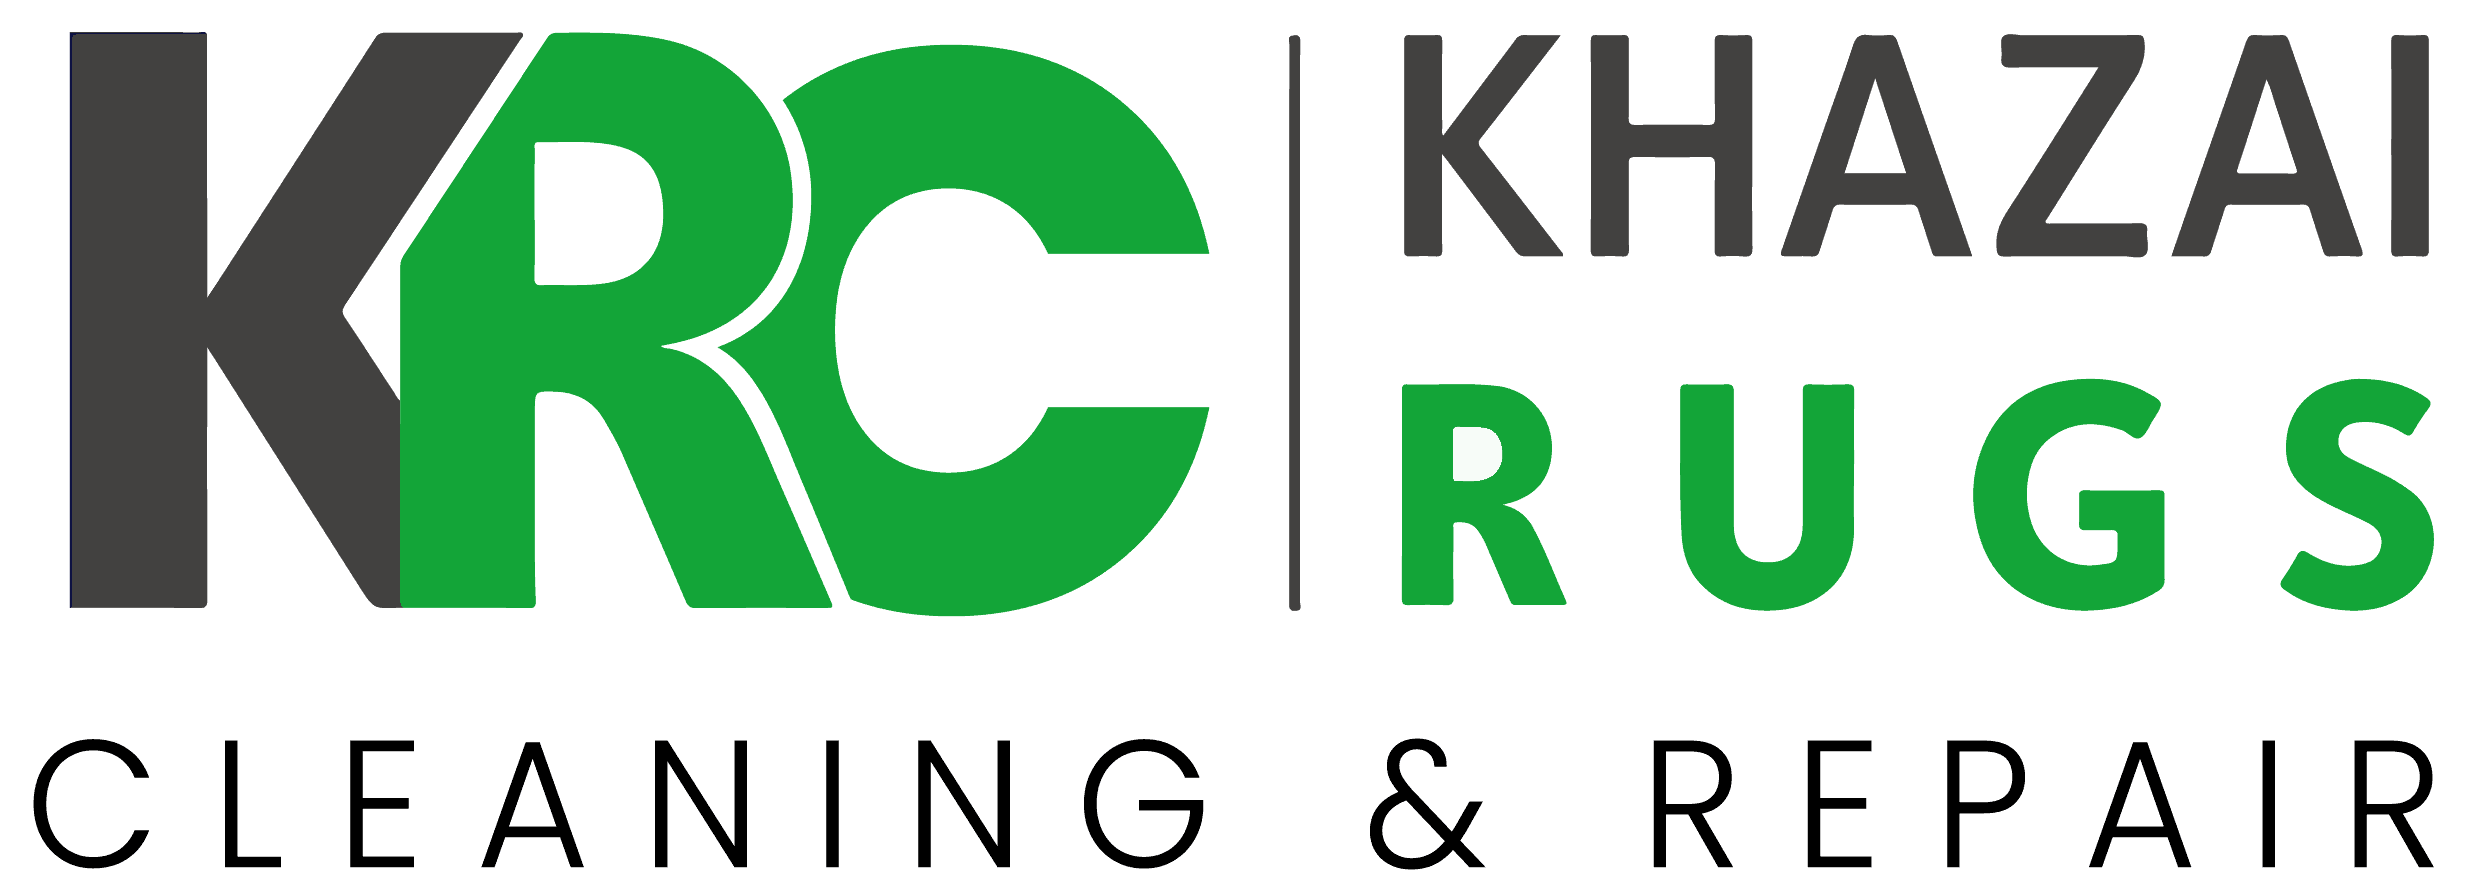 Khazai rug cleaning and repair logo